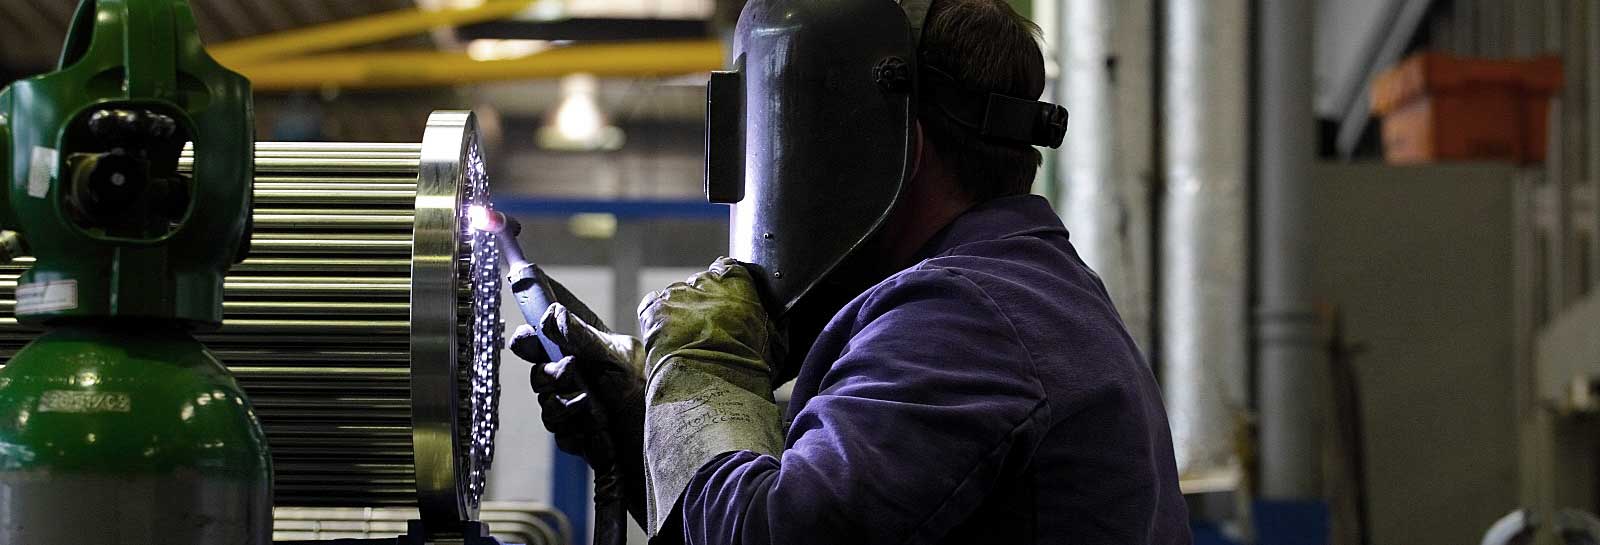 An employee welding a filigree part of a heat exchanger.